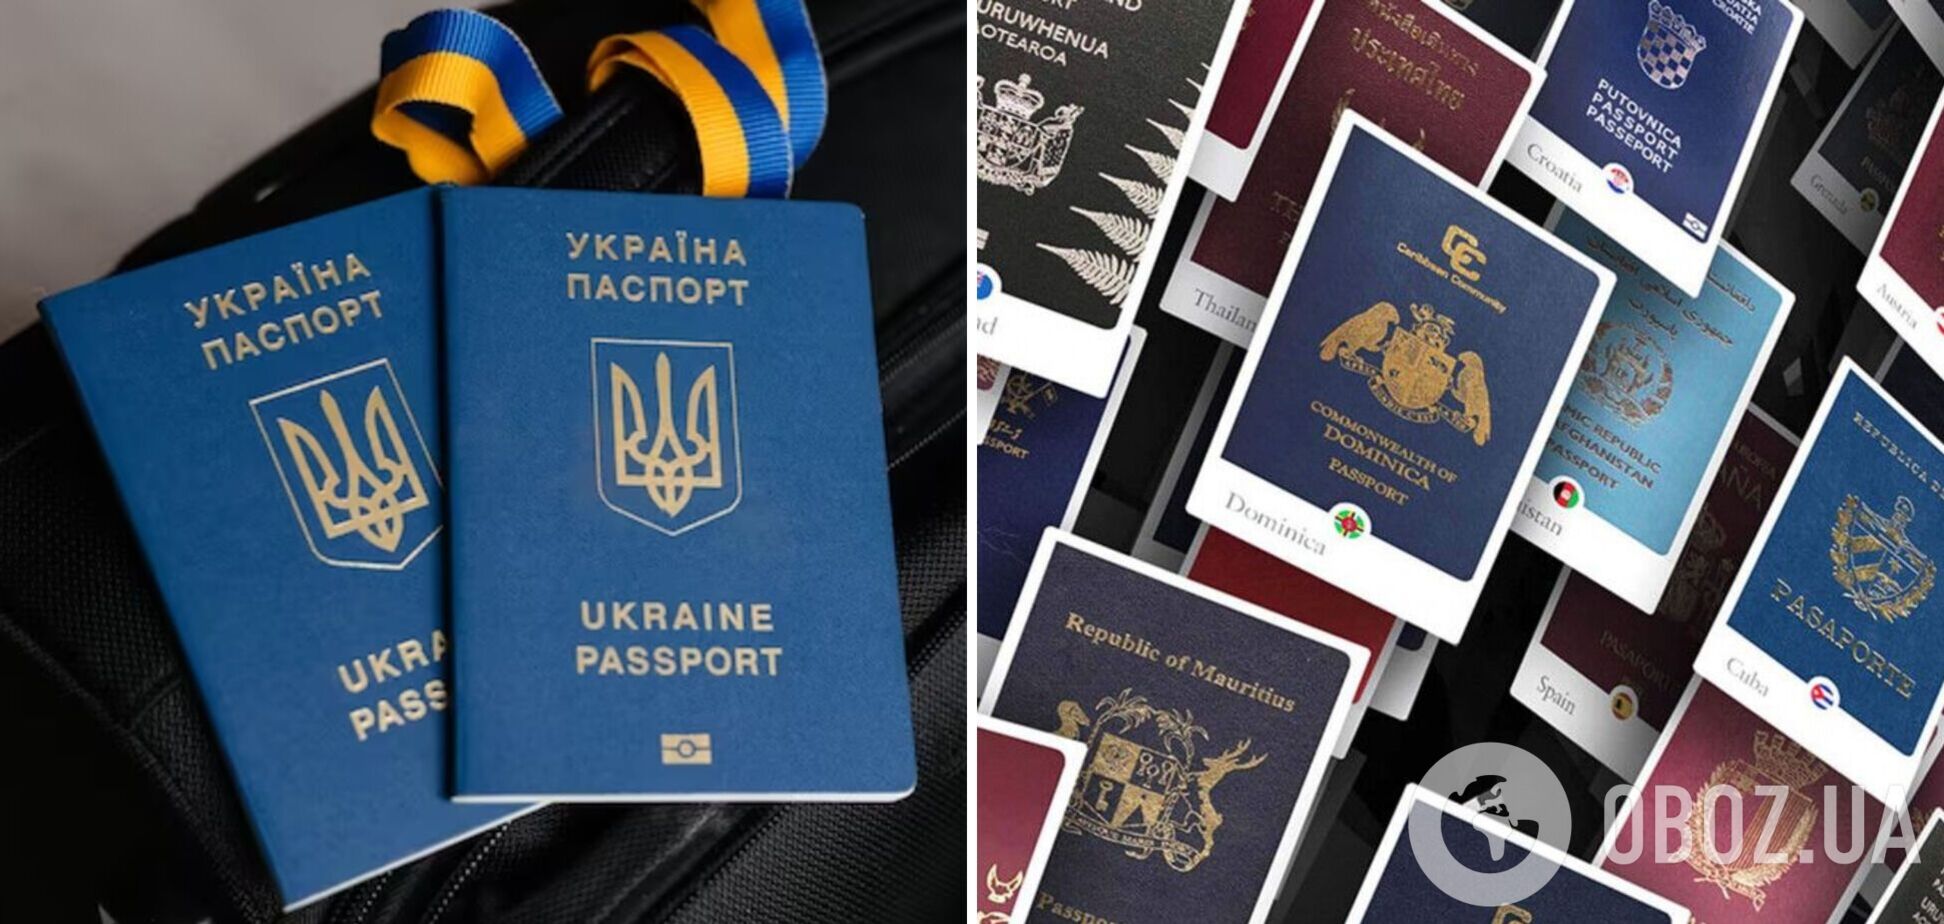 Оприлюднено рейтинг найпотужніших паспортів світу: Україна на 32 місці, Росія втрачає позиції